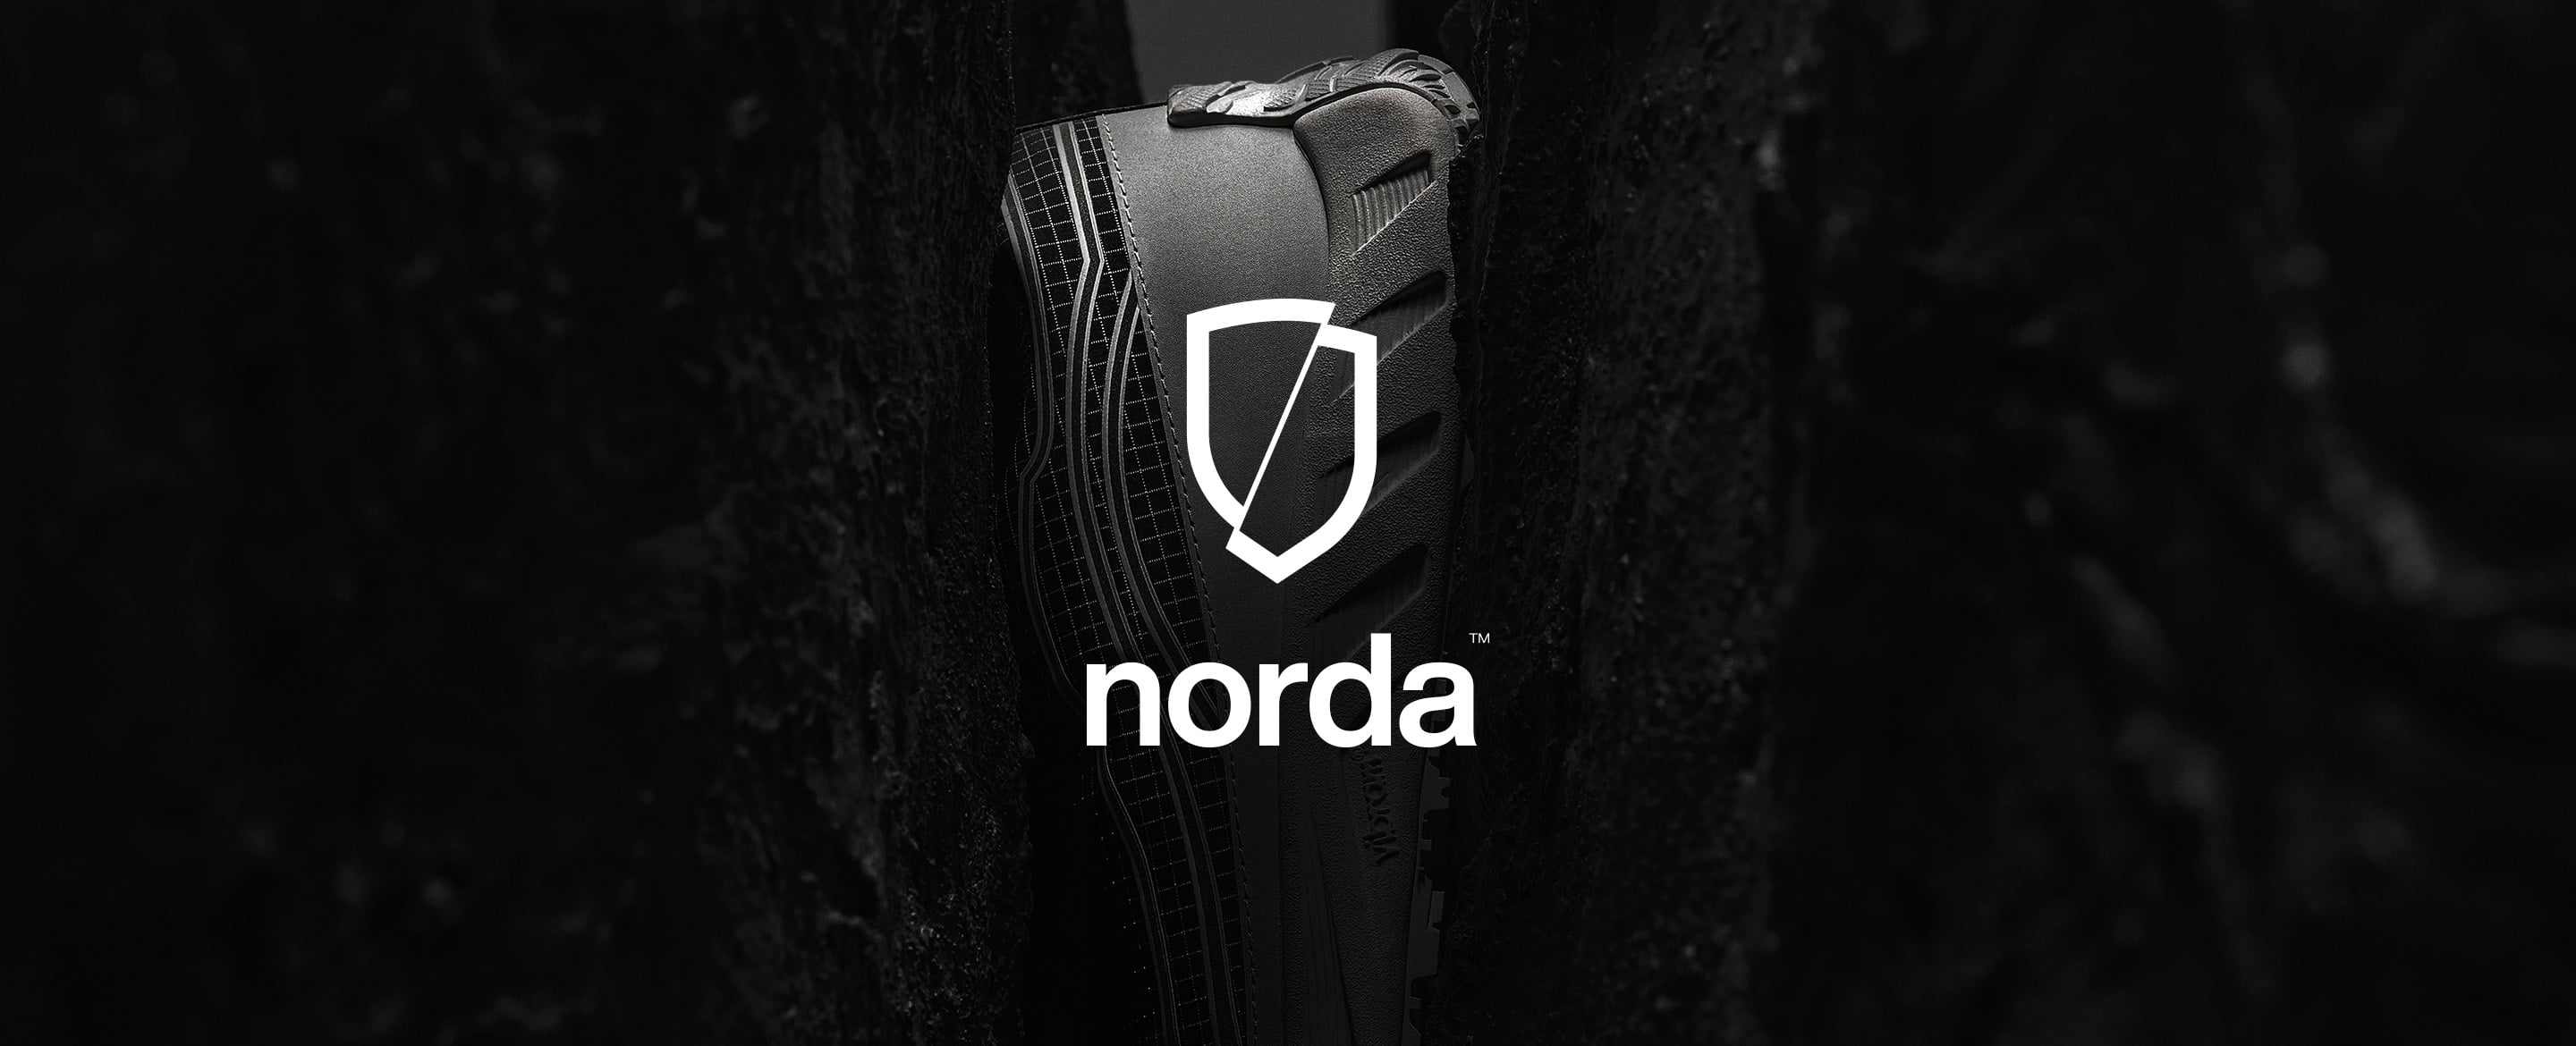 norda New Arrivals | イノベーションと最先端技術を駆使し地球環境にも配慮したフットウェアブランド〈norda〉の取り扱いがスタート。